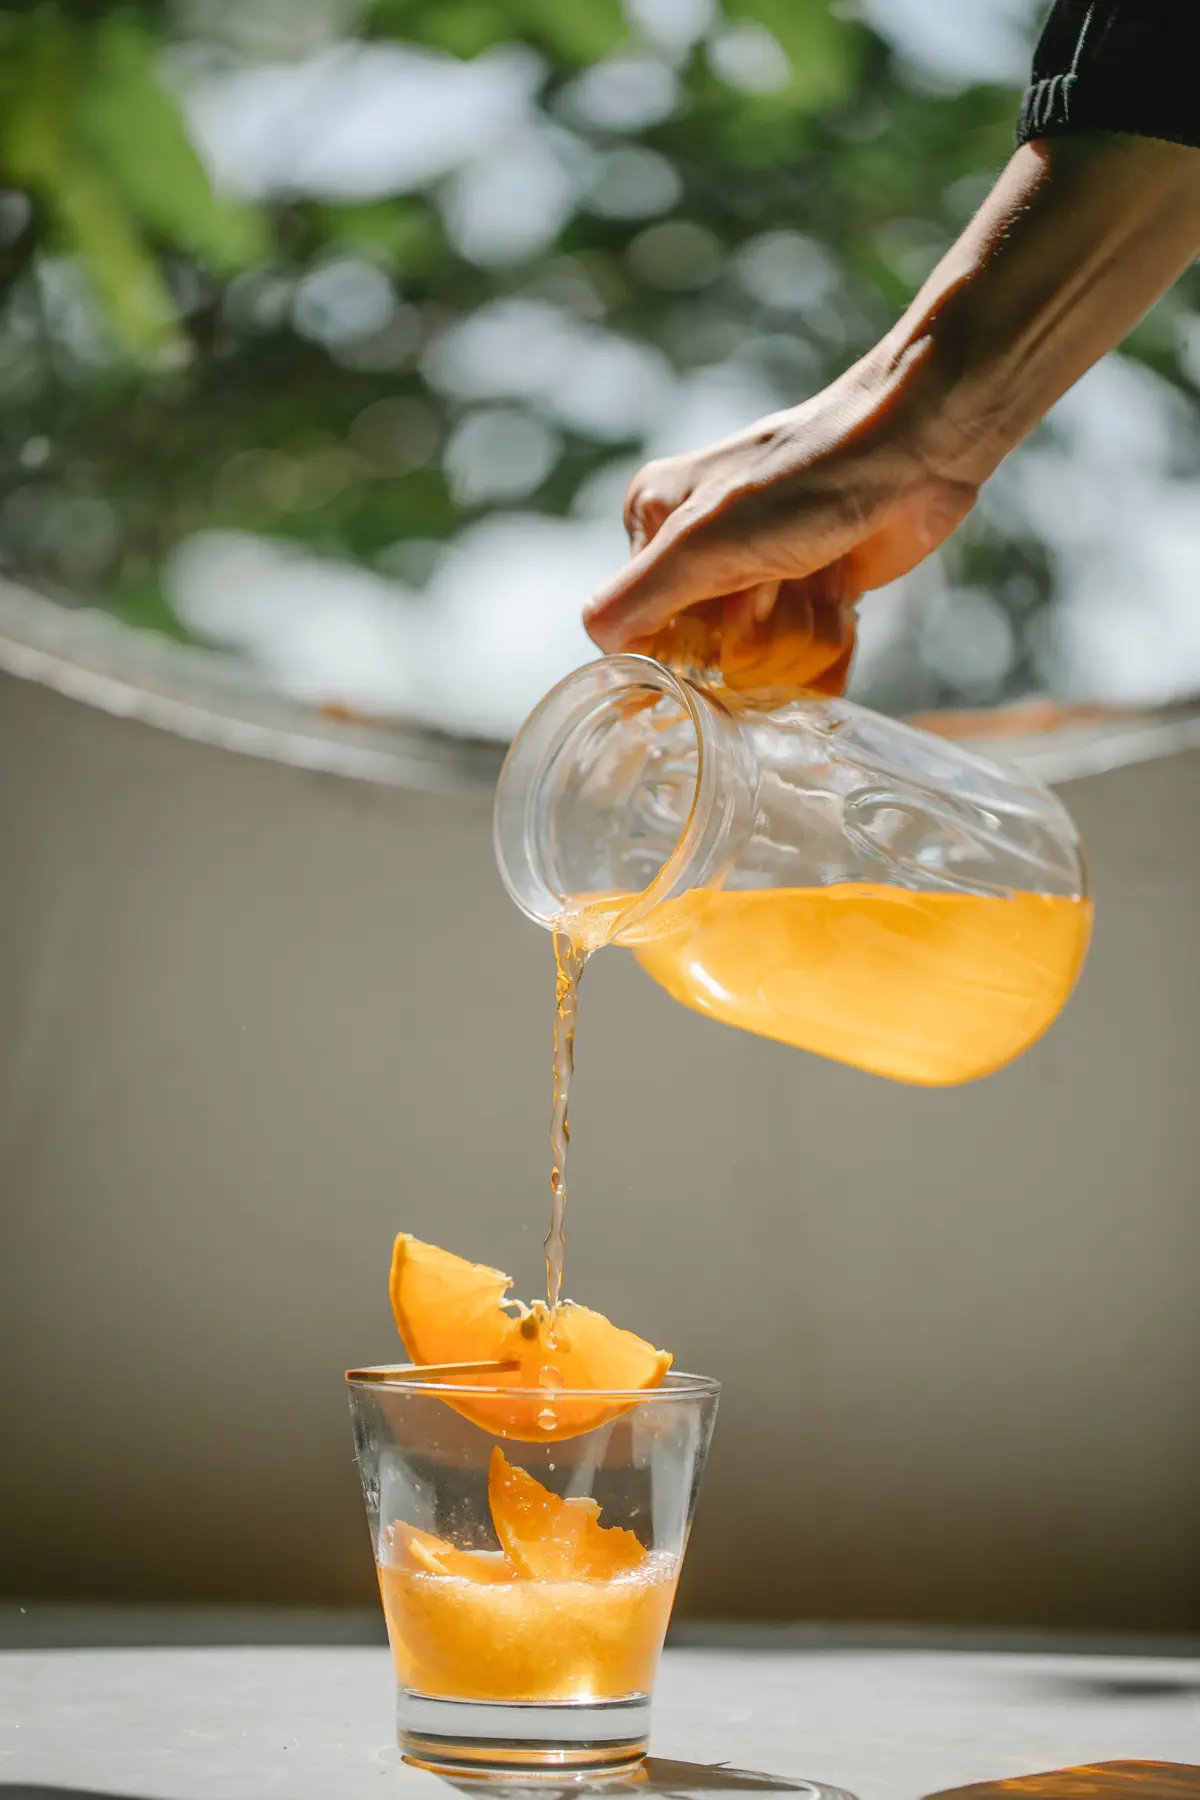 Dłoń nalewająca ze szklanego dzbanka do szklanki z pomarańczą sok pomarańczowy z witaminą C na tle okna